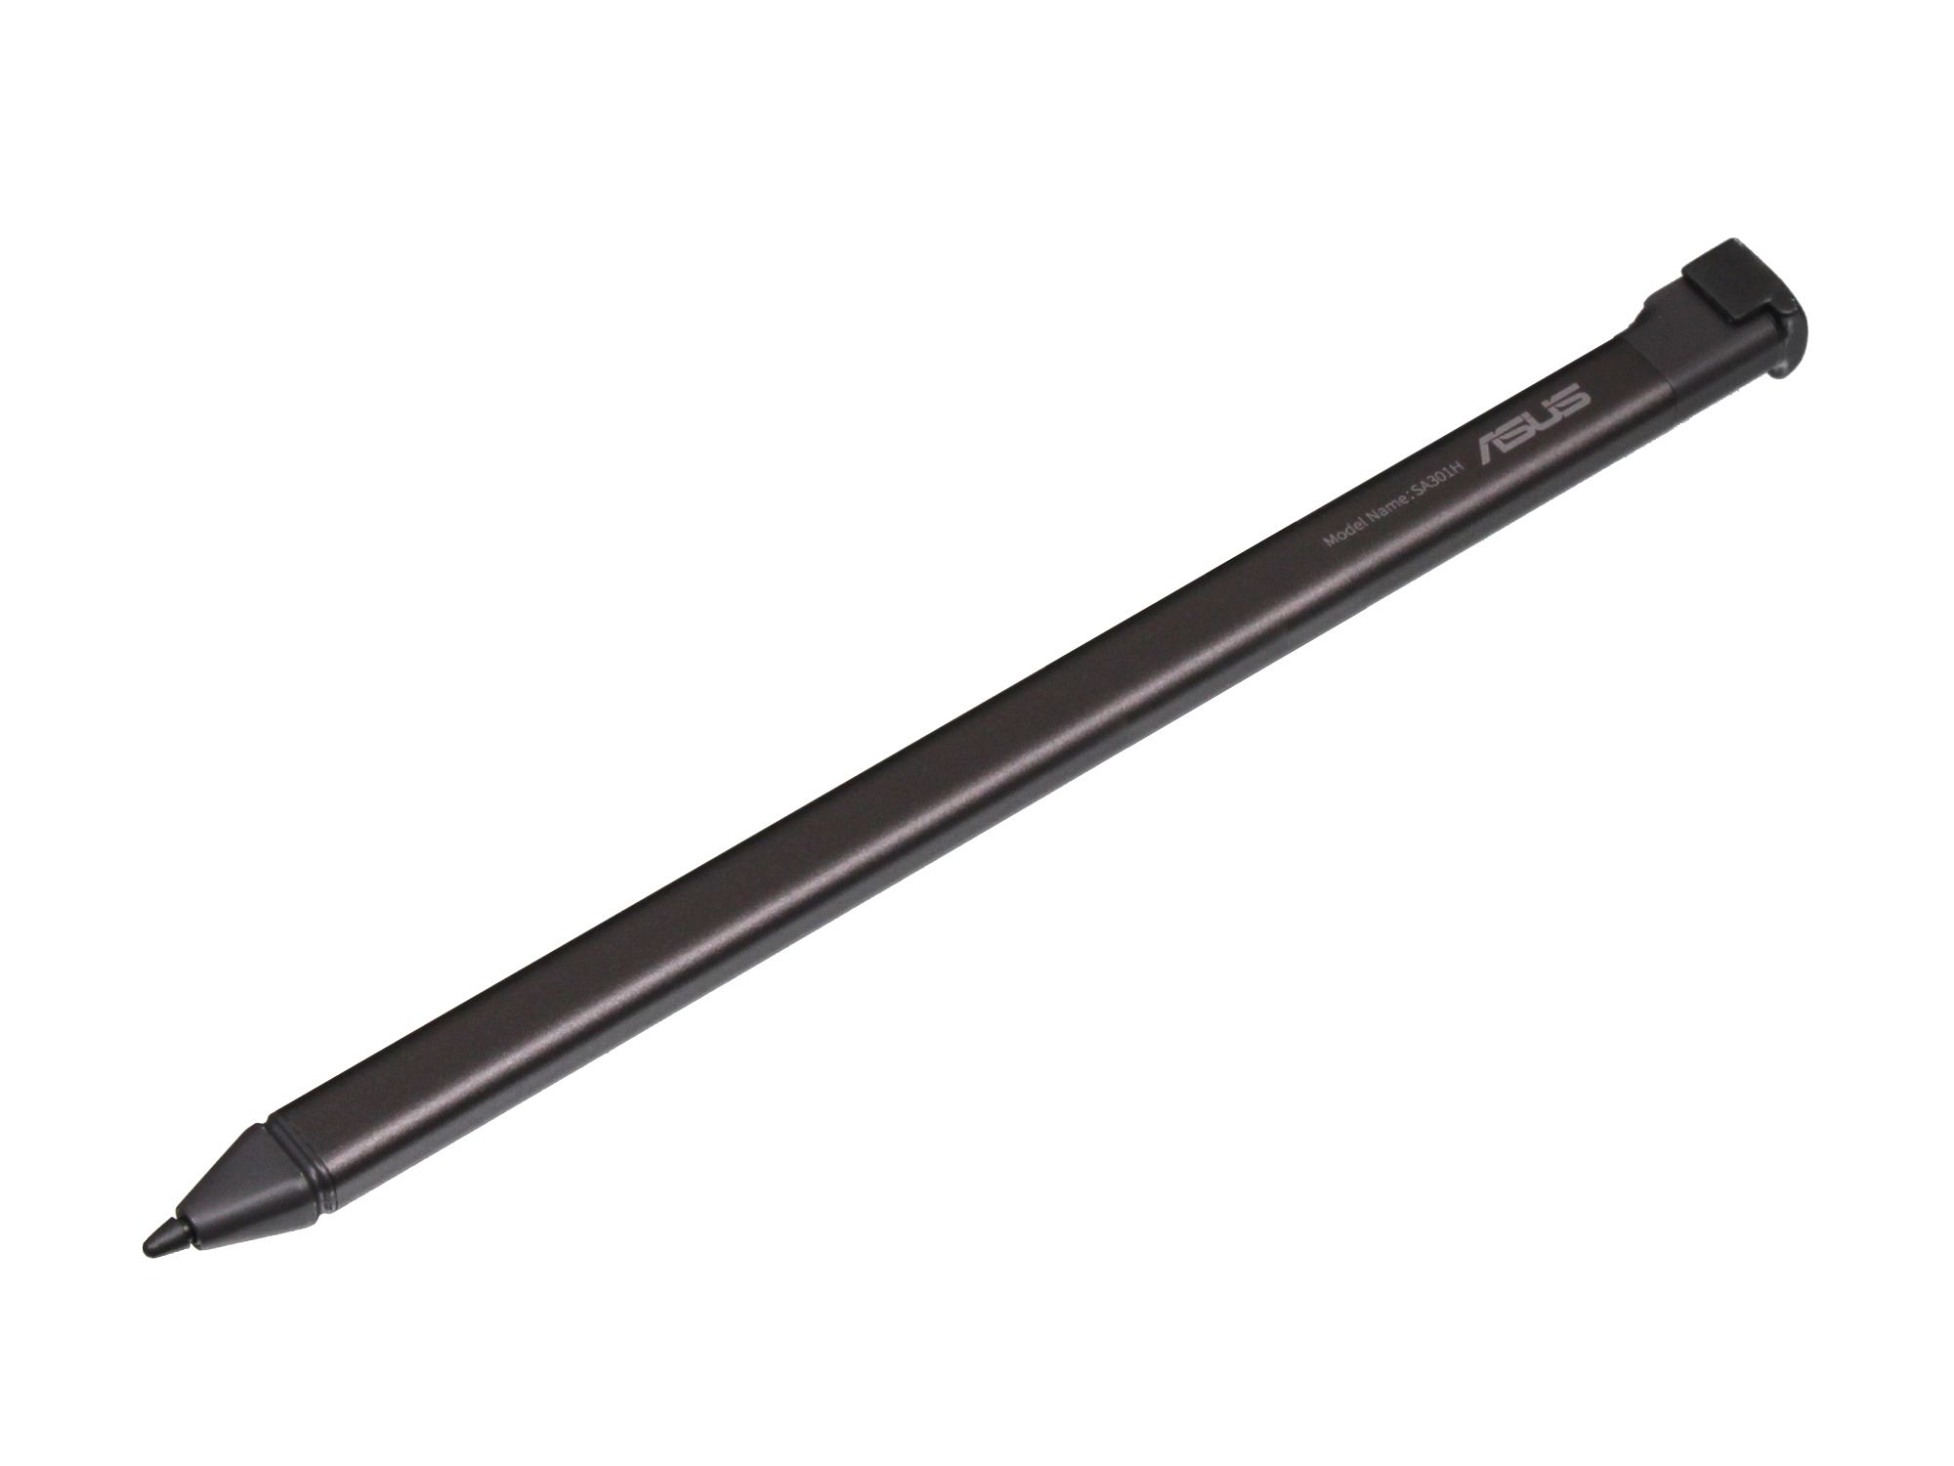 Asus SA301H Stylus Pen